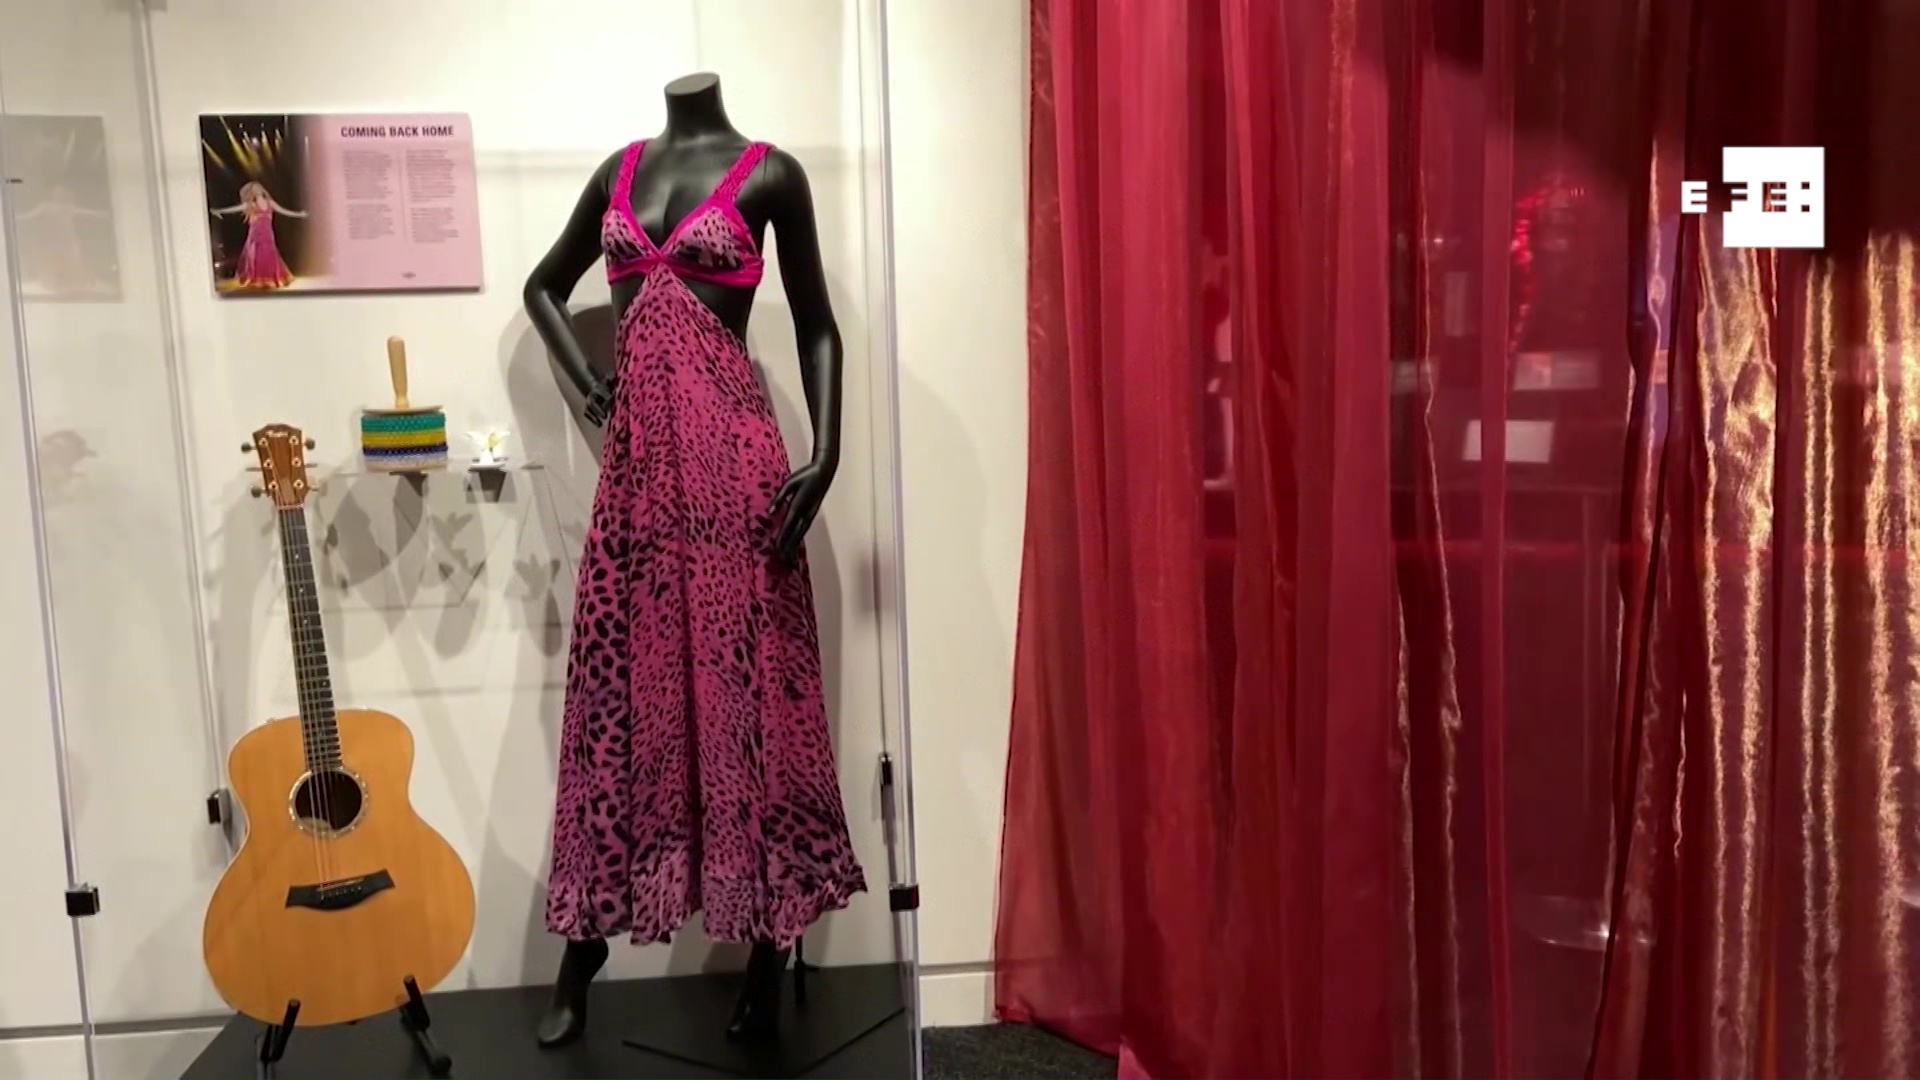 Museo de los Grammy exhibe carrera de Shakira